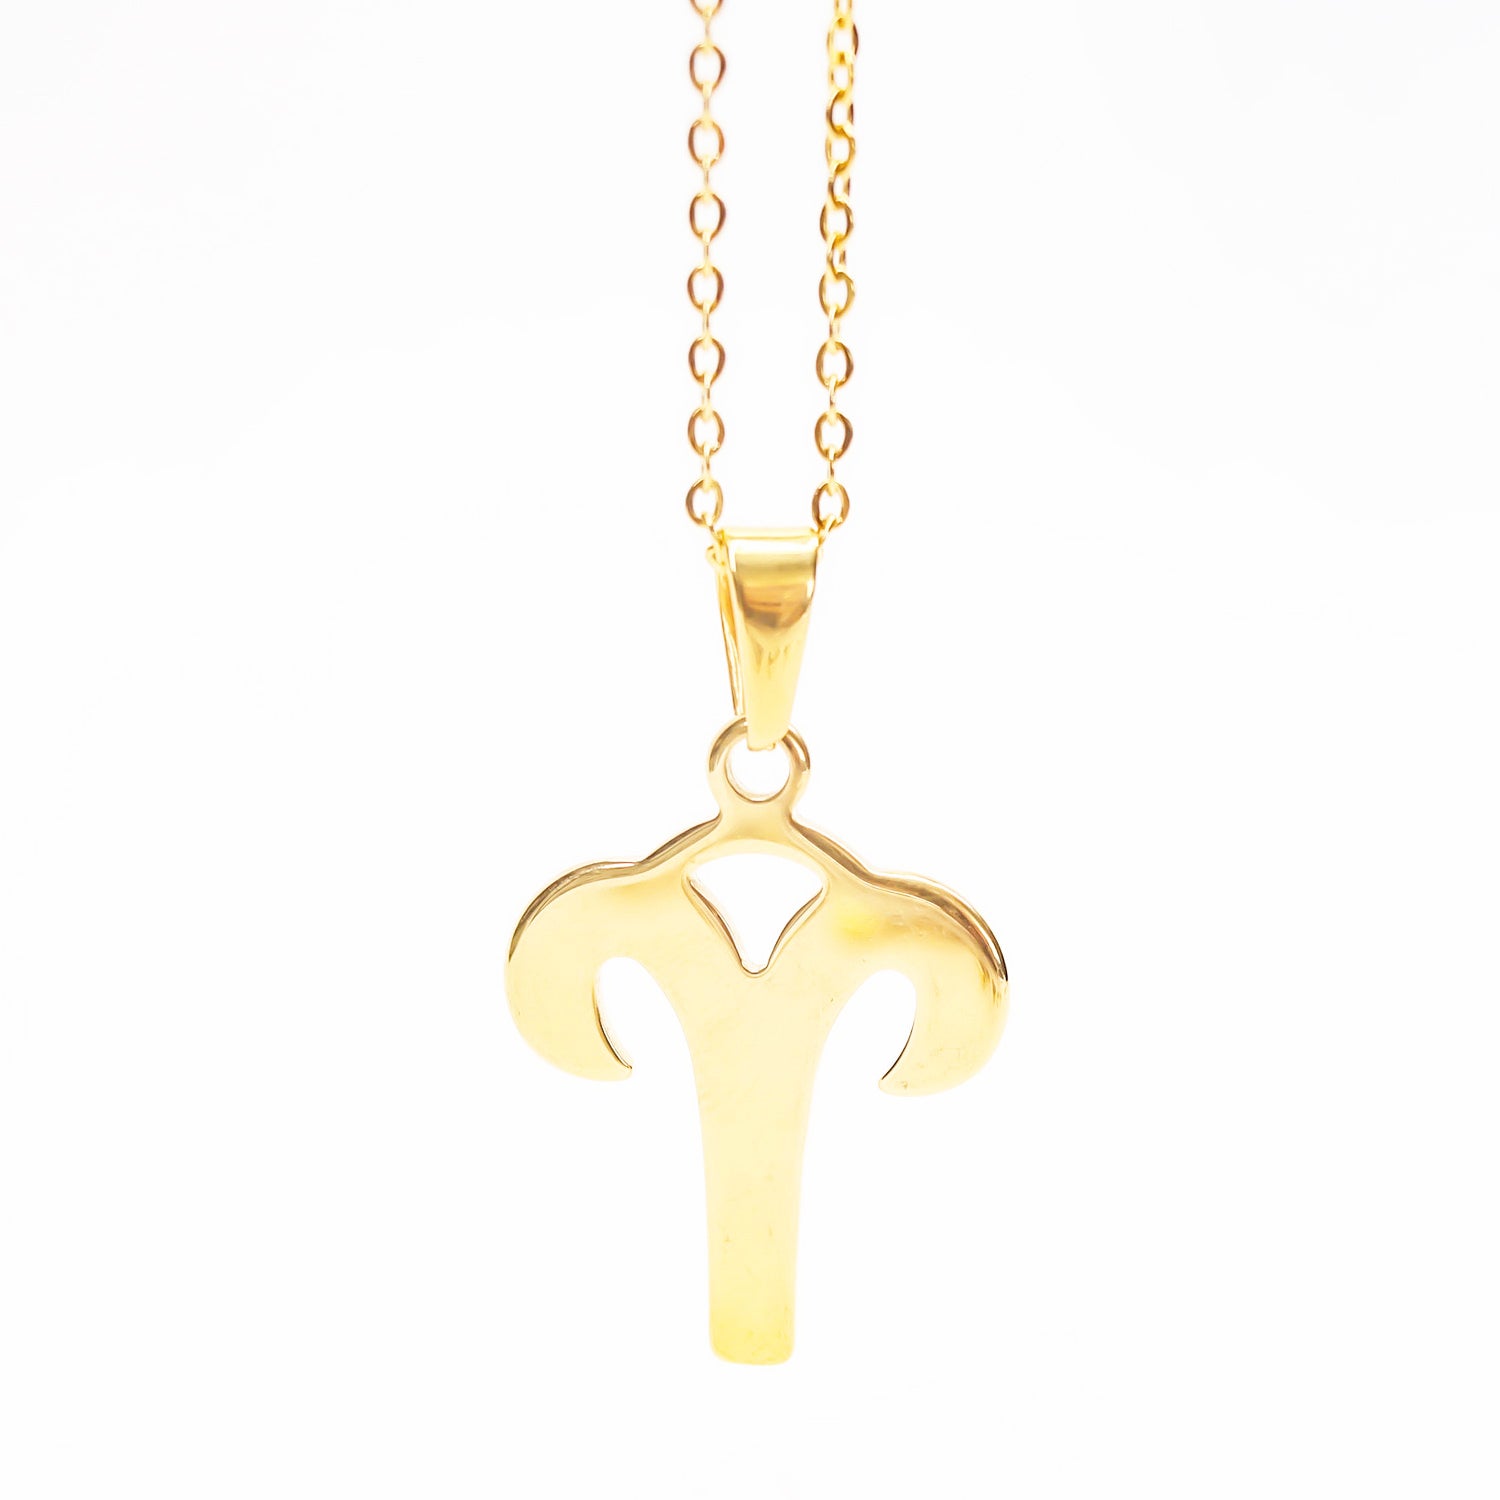 Colgante de acero inoxidable dorado con forma del signo del zodiaco Aries de 28mm